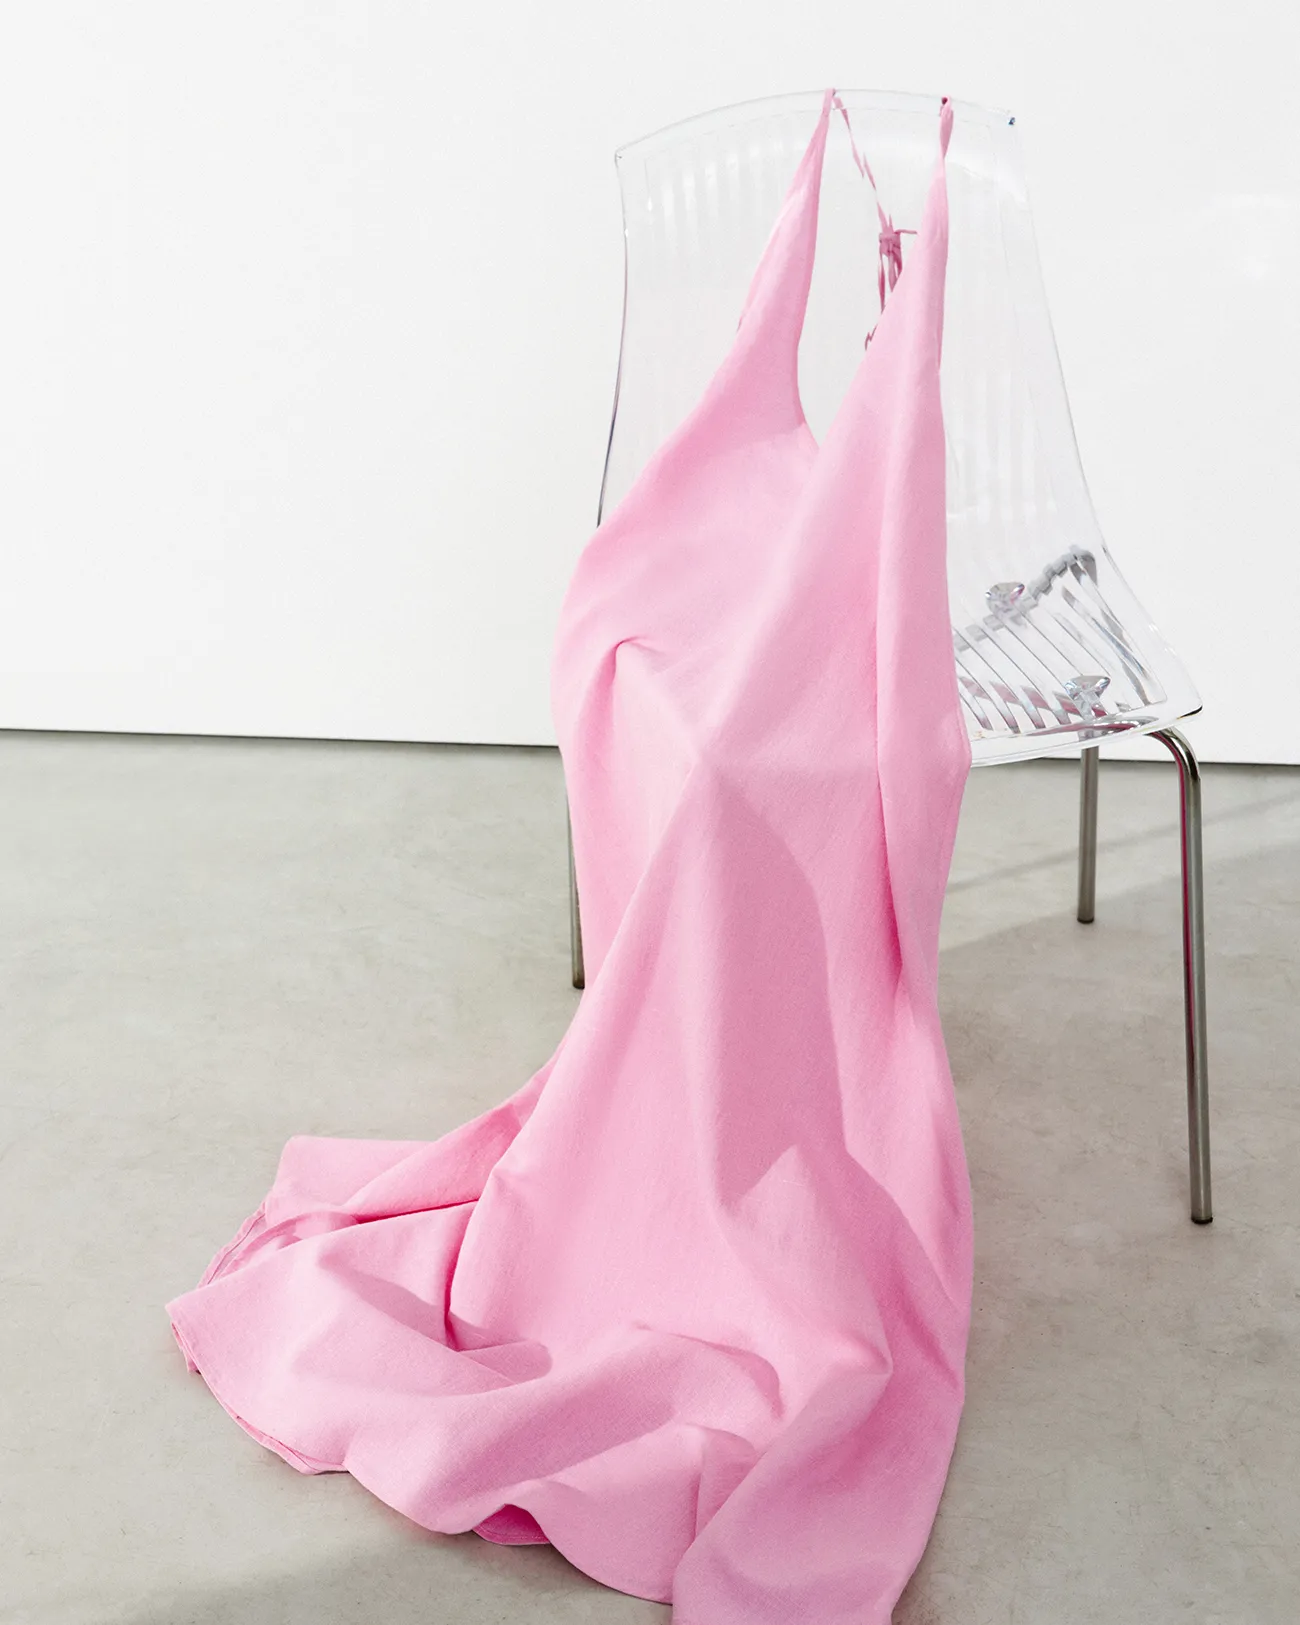 Платье миди льняное розового цвета